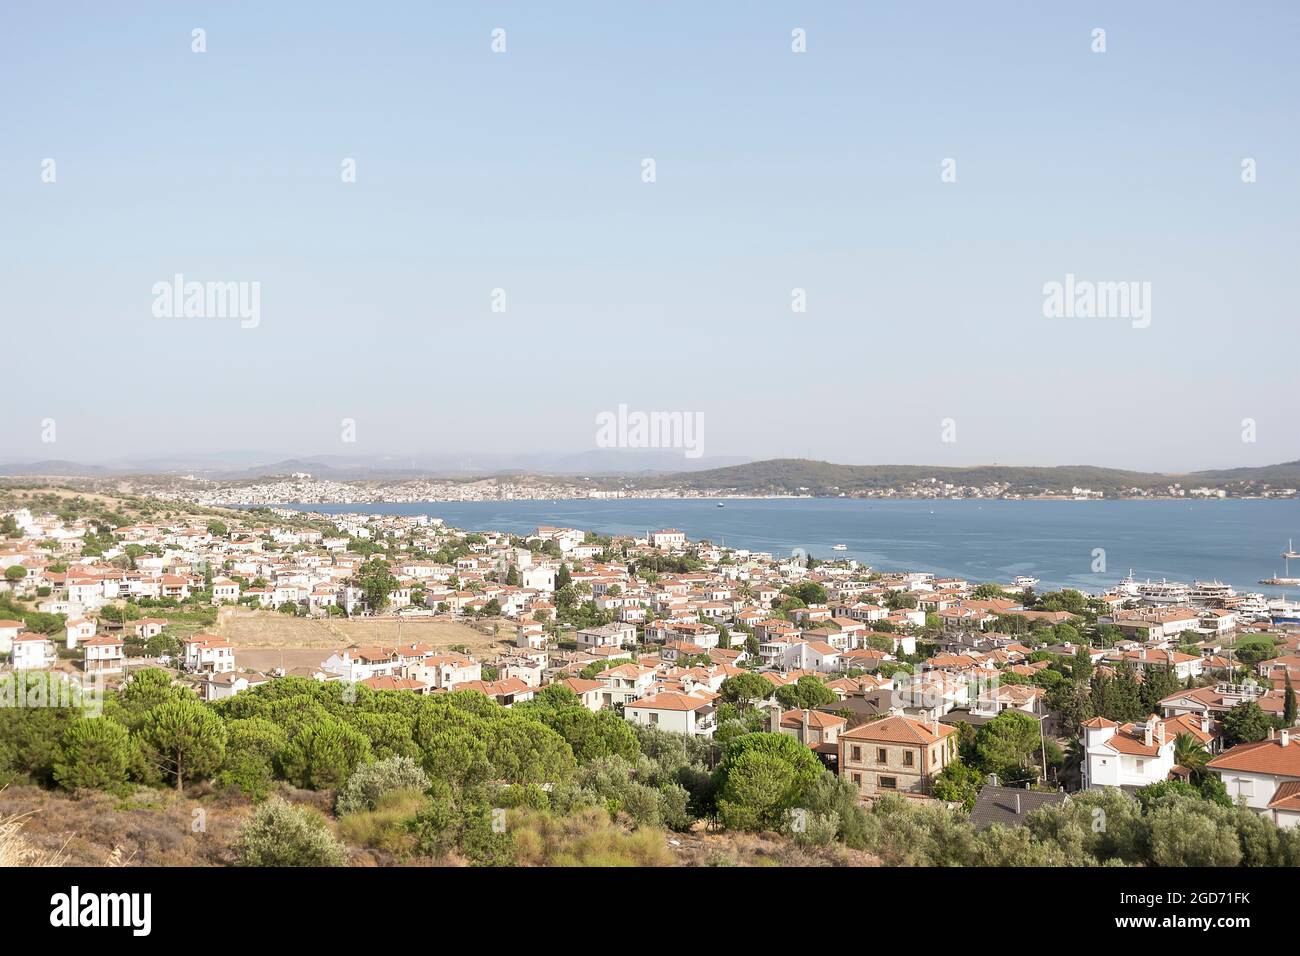 Una vista generale dell'Isola di Cunda dalla cima dell'Isola. Isola di Cunda, anche chiamata isola di Allibey, (in turco: Cunda Adası,Allibey Adası) Foto Stock